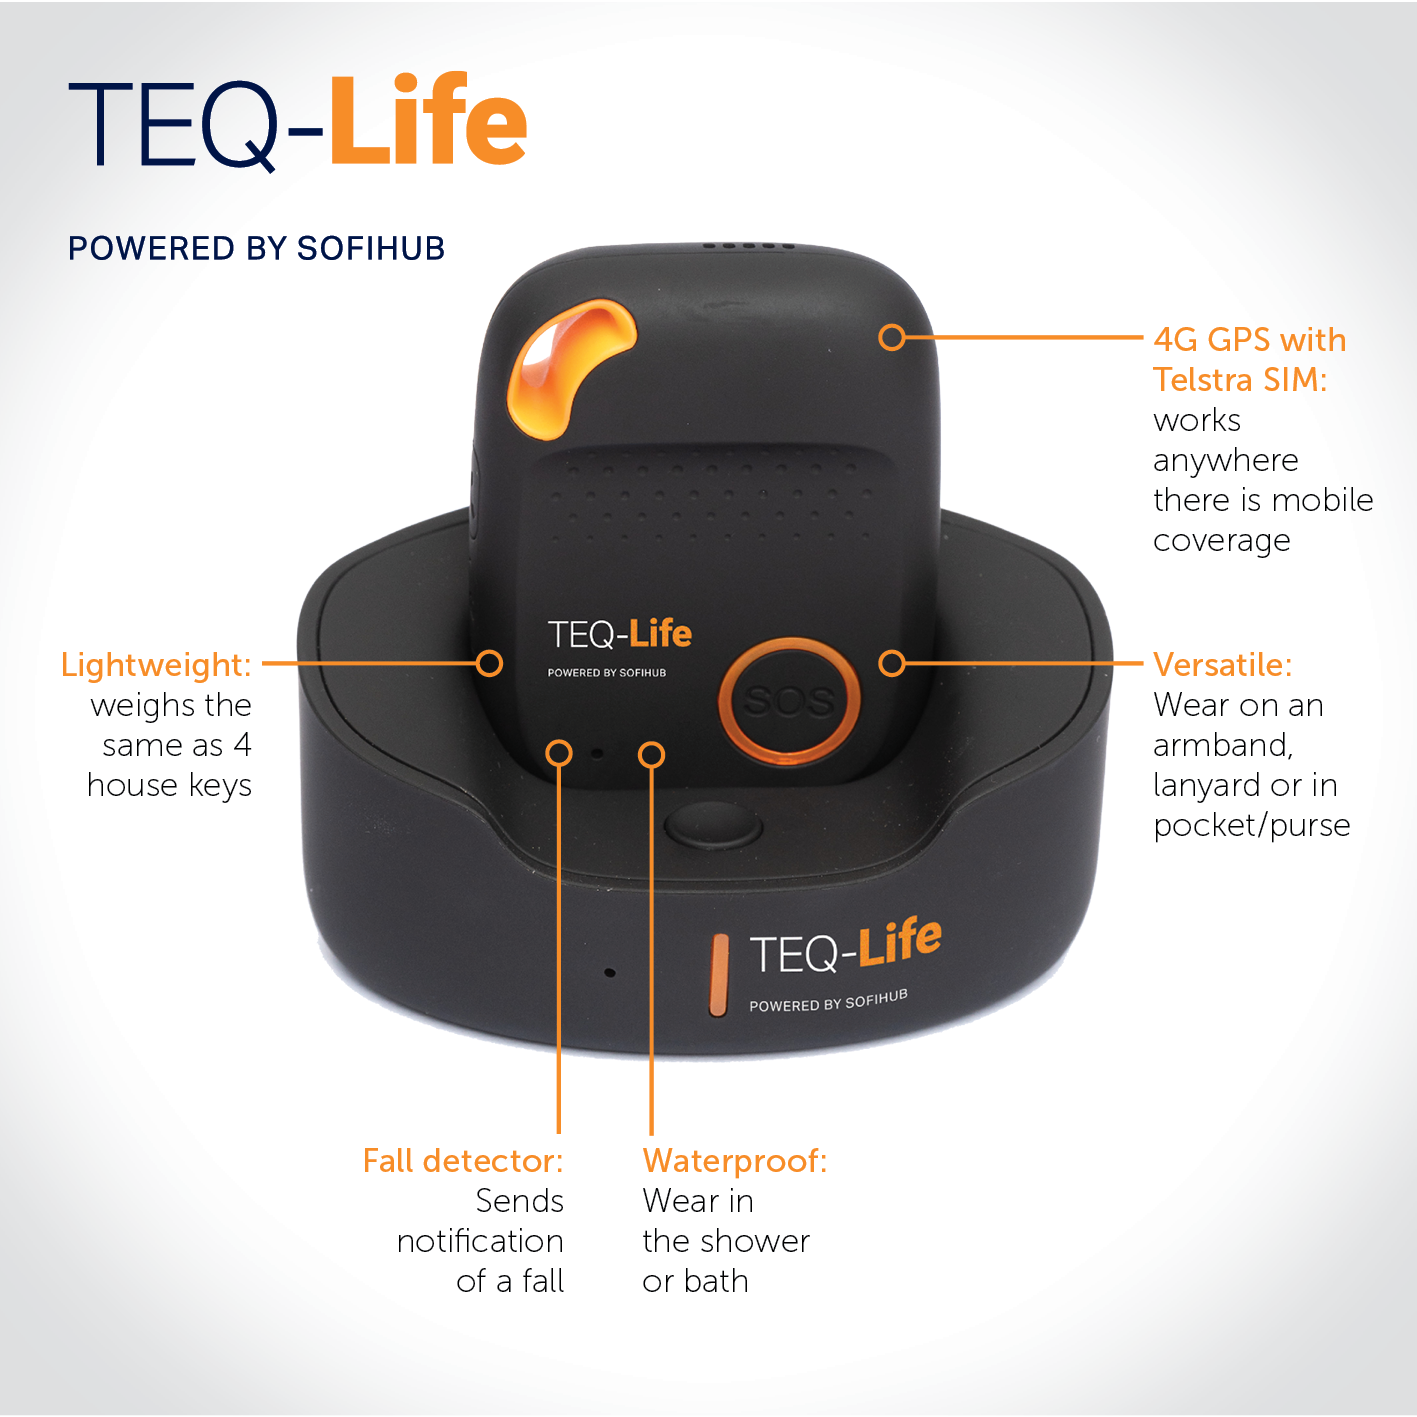 Buy TEQ-FallsAlert: Fall Detection Device